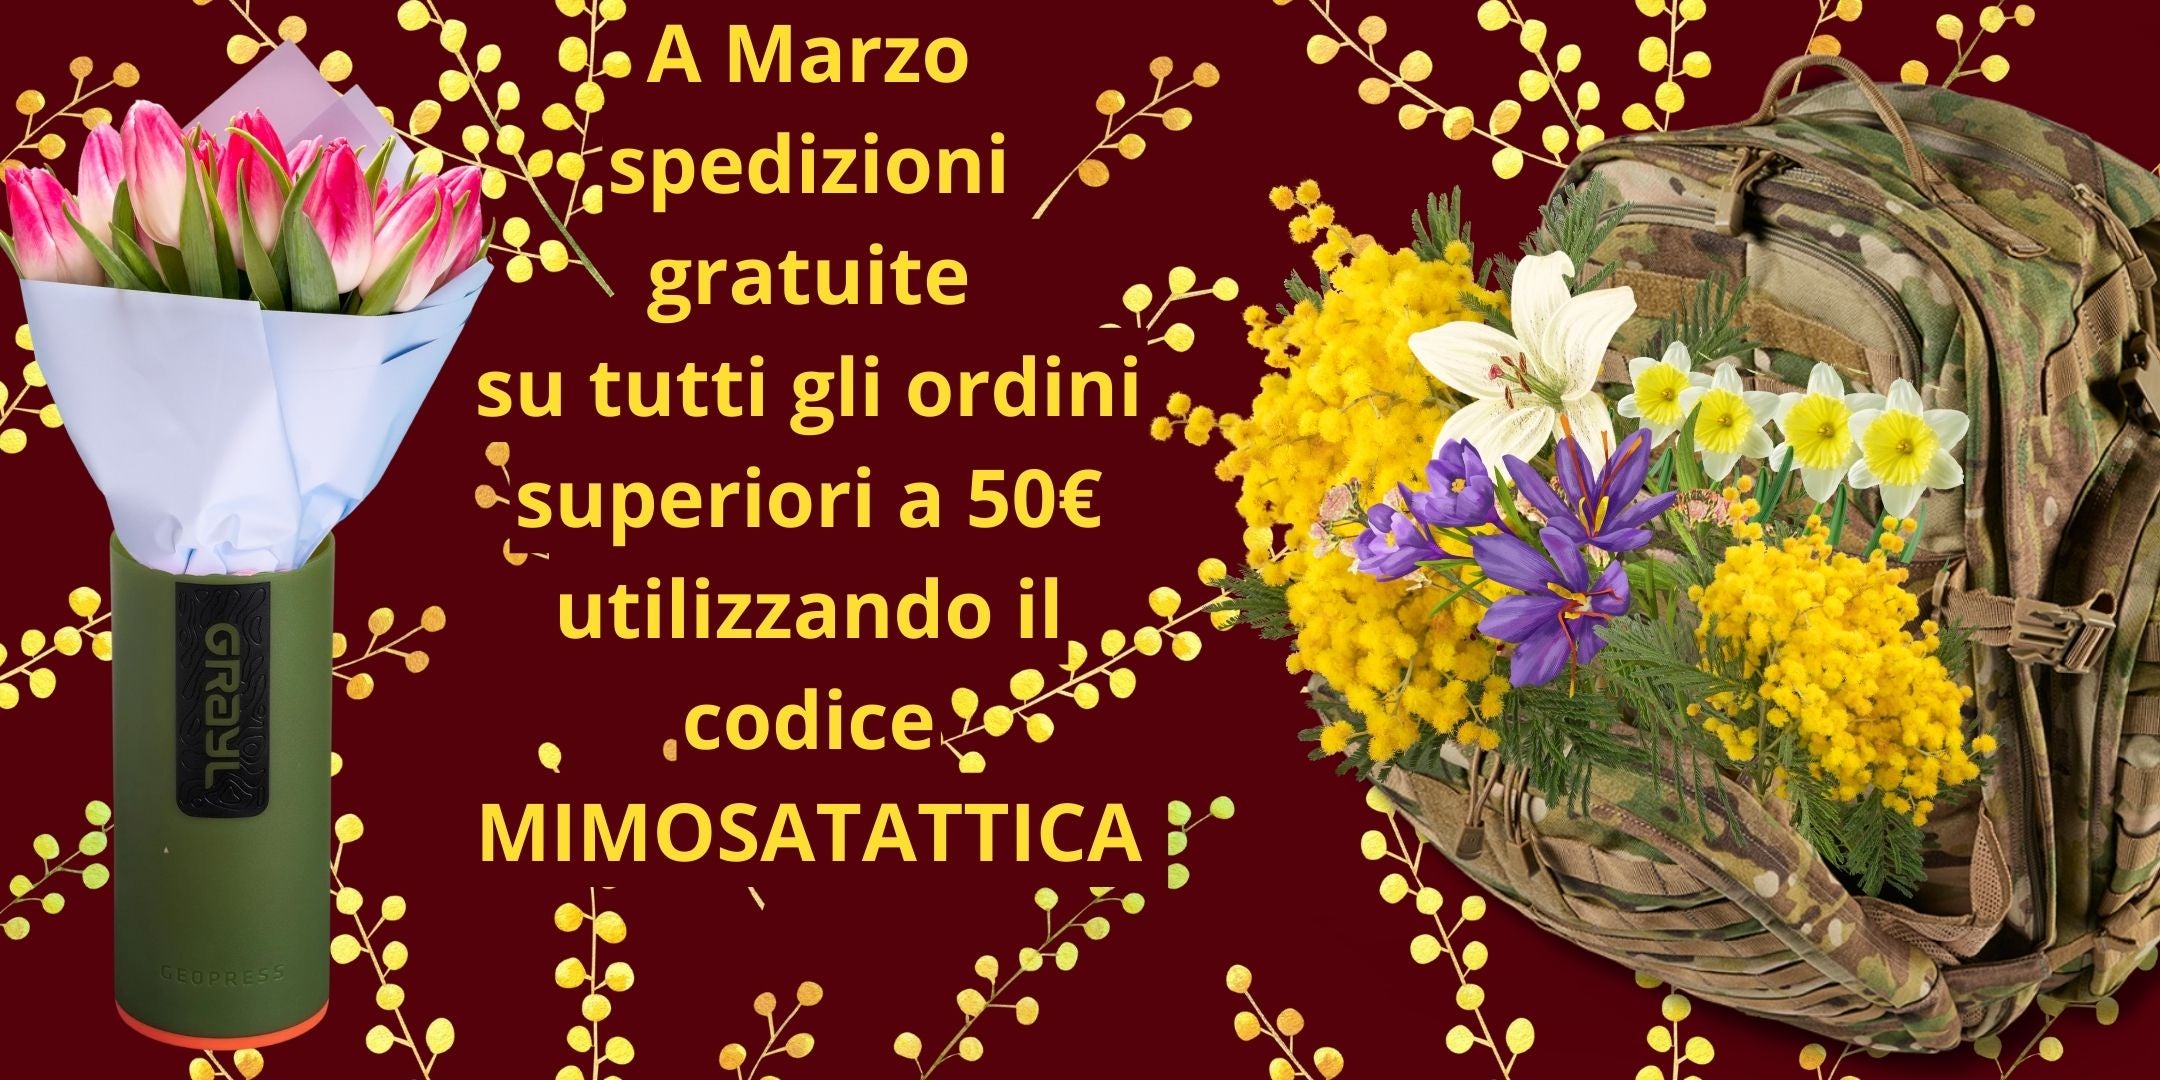 Spedizioni gratuite per ordine superiori a 50€ a marzo con il codice mimosatattica